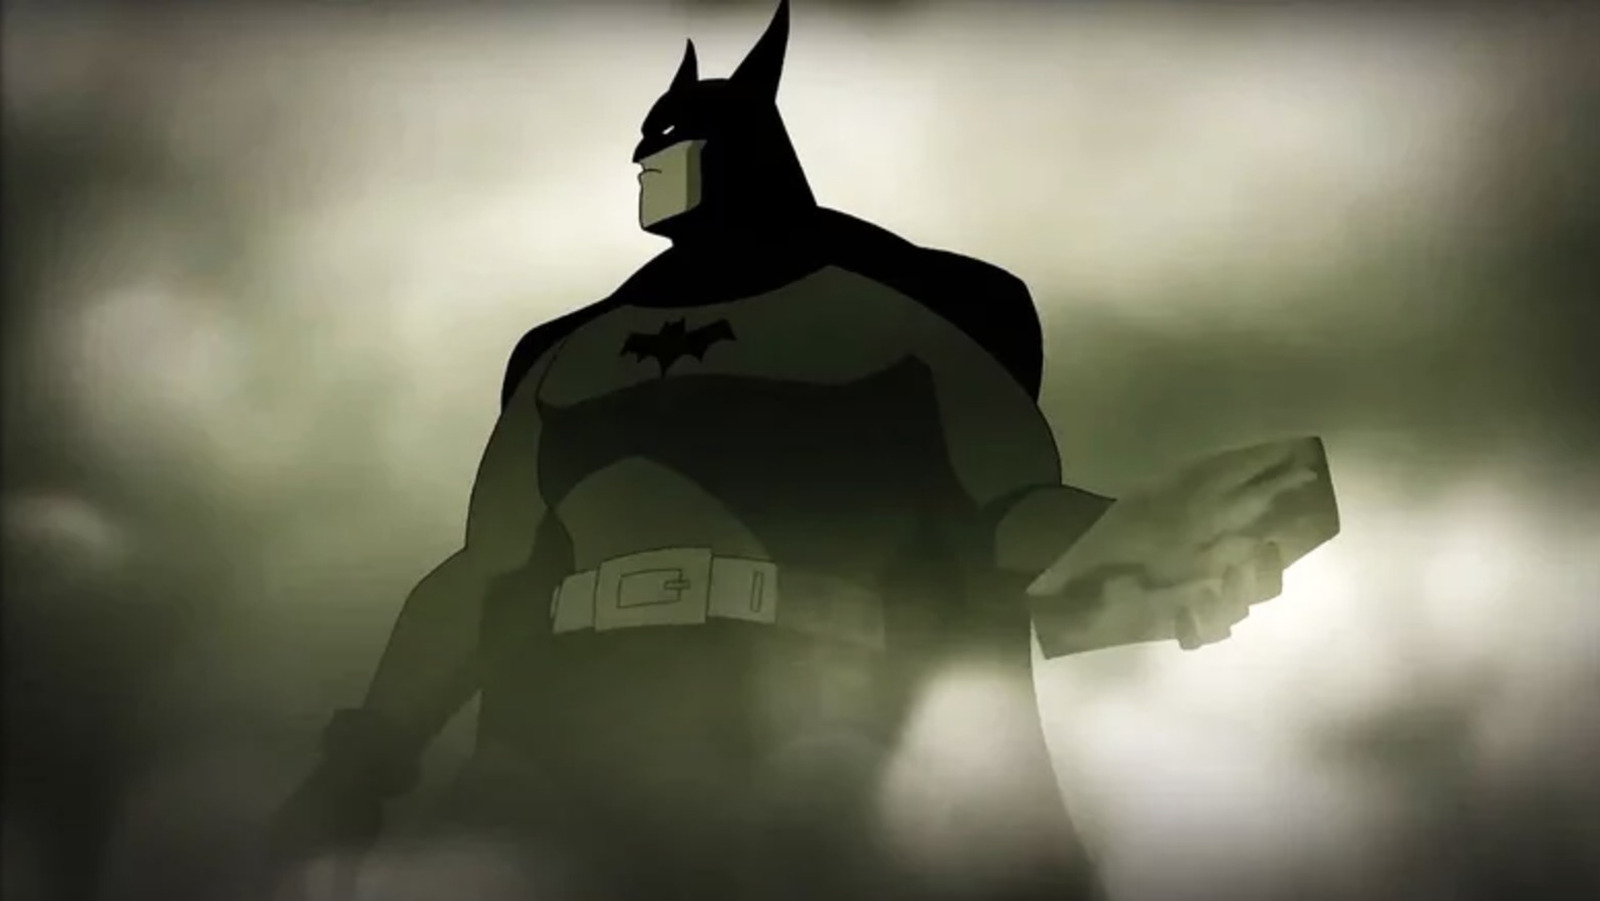 Batman: Caped Crusader Animated Series Has Been Canceled At HBO Max